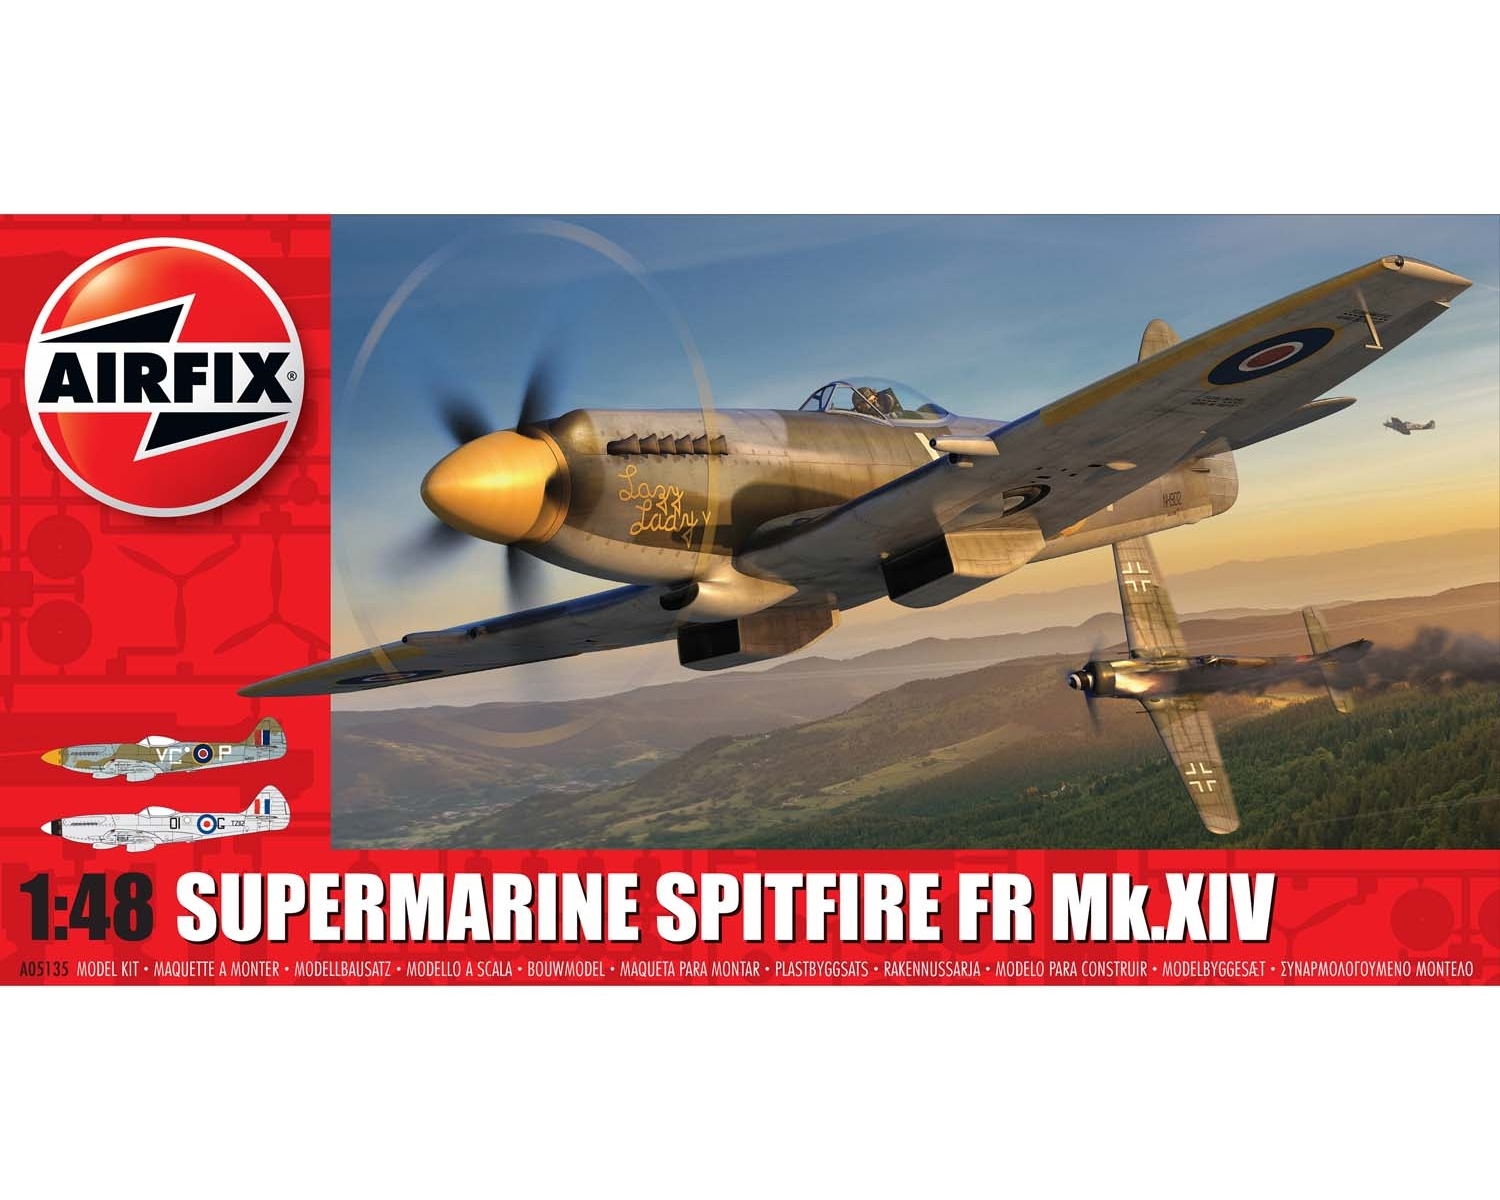 Airfix 05135 - SUPERMARINE SPITFIRE FR MK.XIV